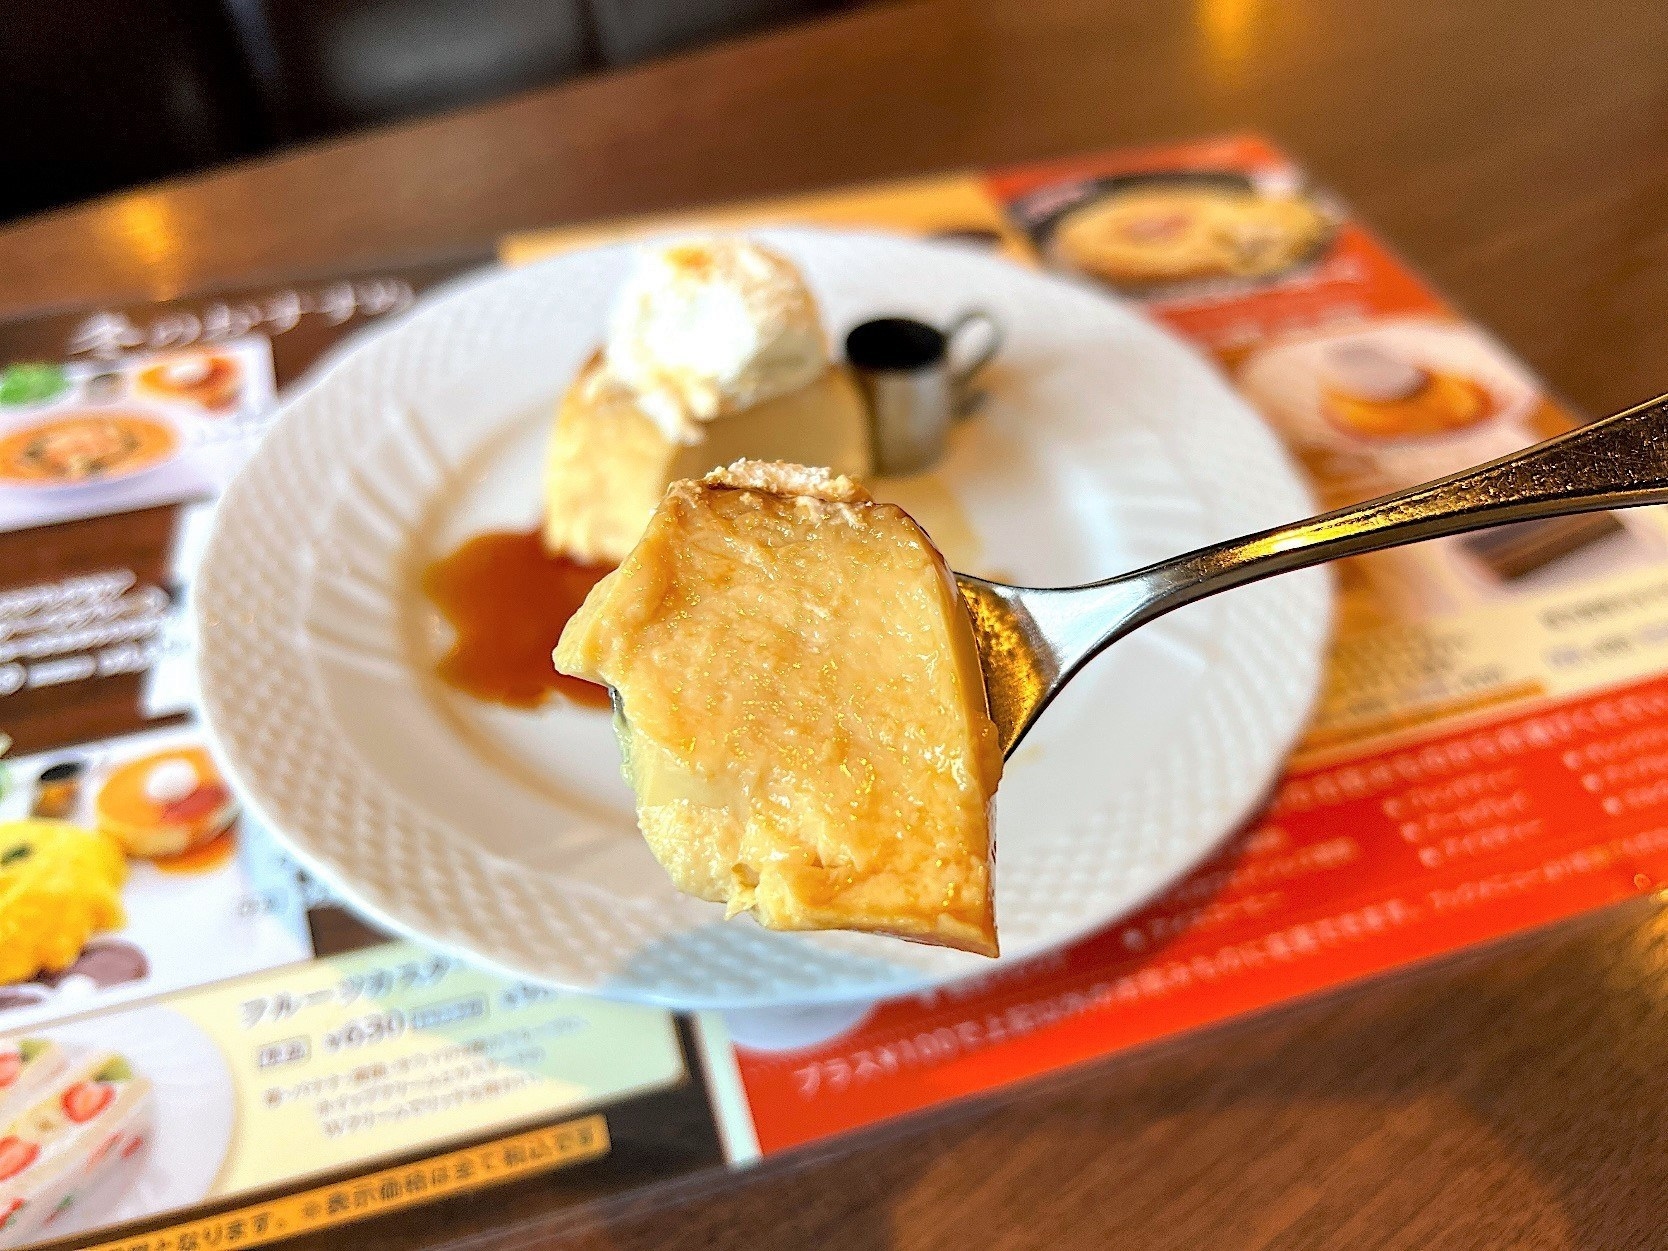 星乃珈琲店のおいしいオススメスイーツ「昭和のプリン」レトロな味わいのしっとり甘いデザート